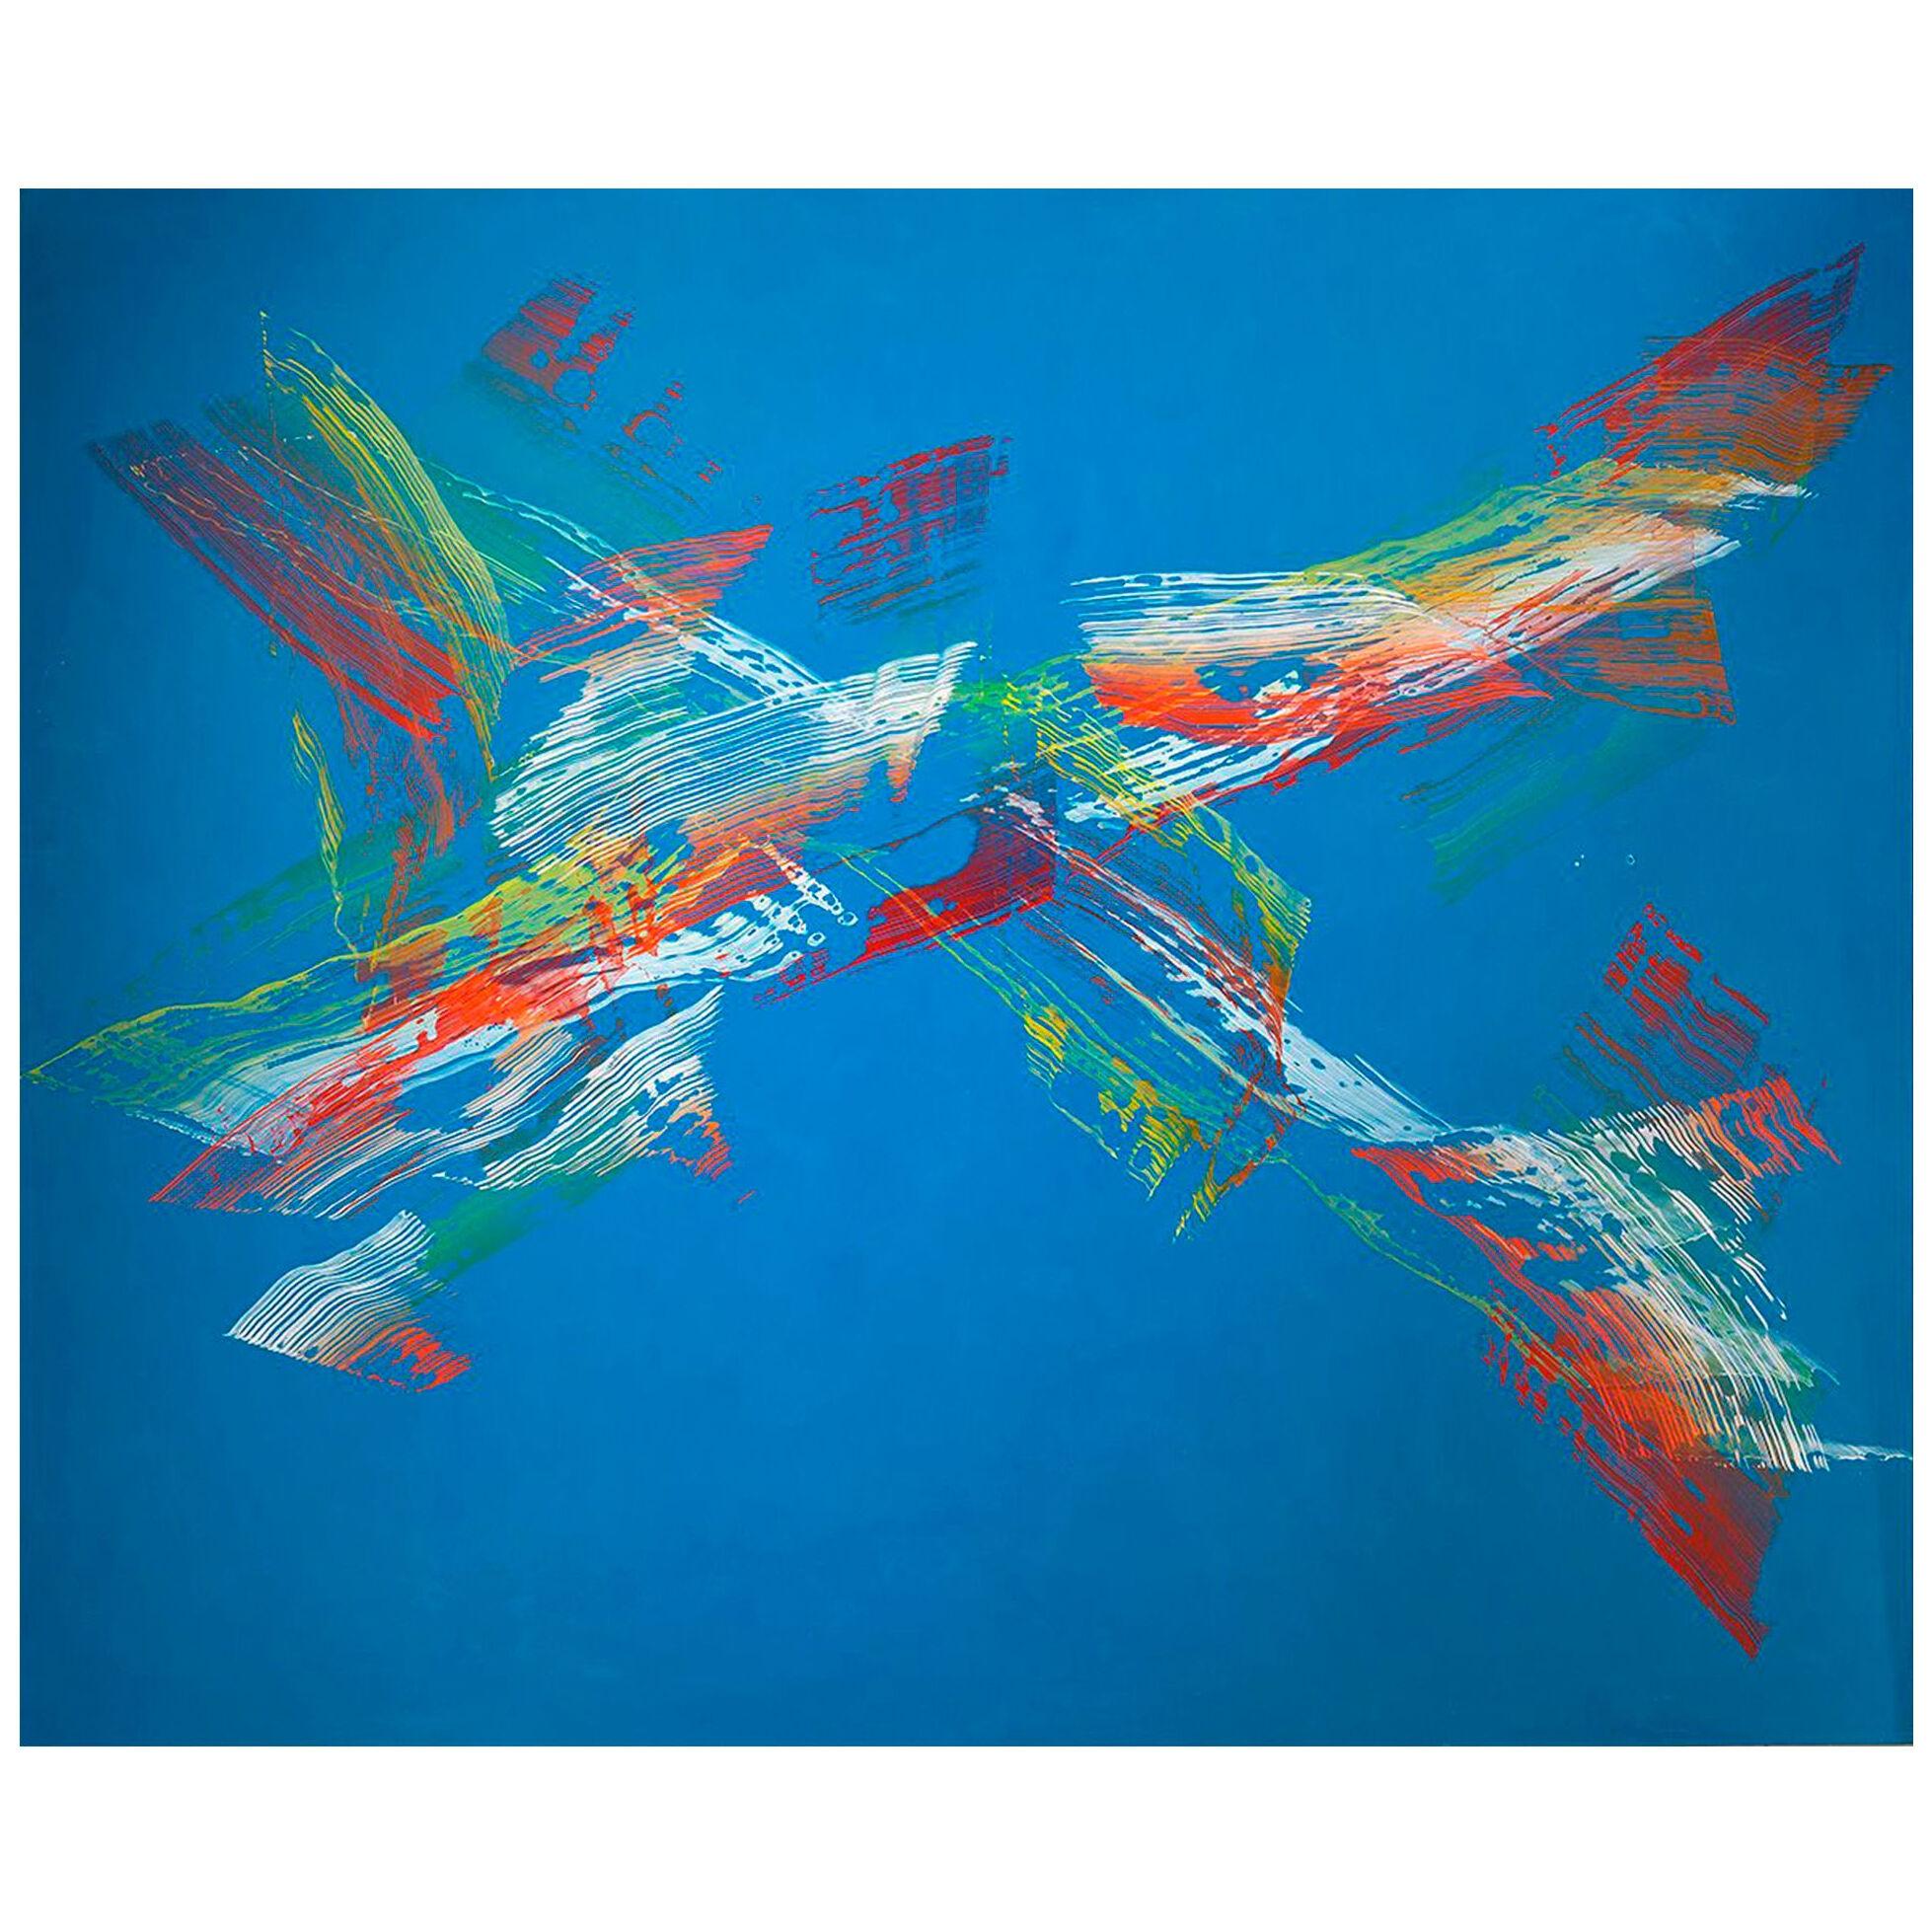 "Azul II", 2004, by José Manuel Broto